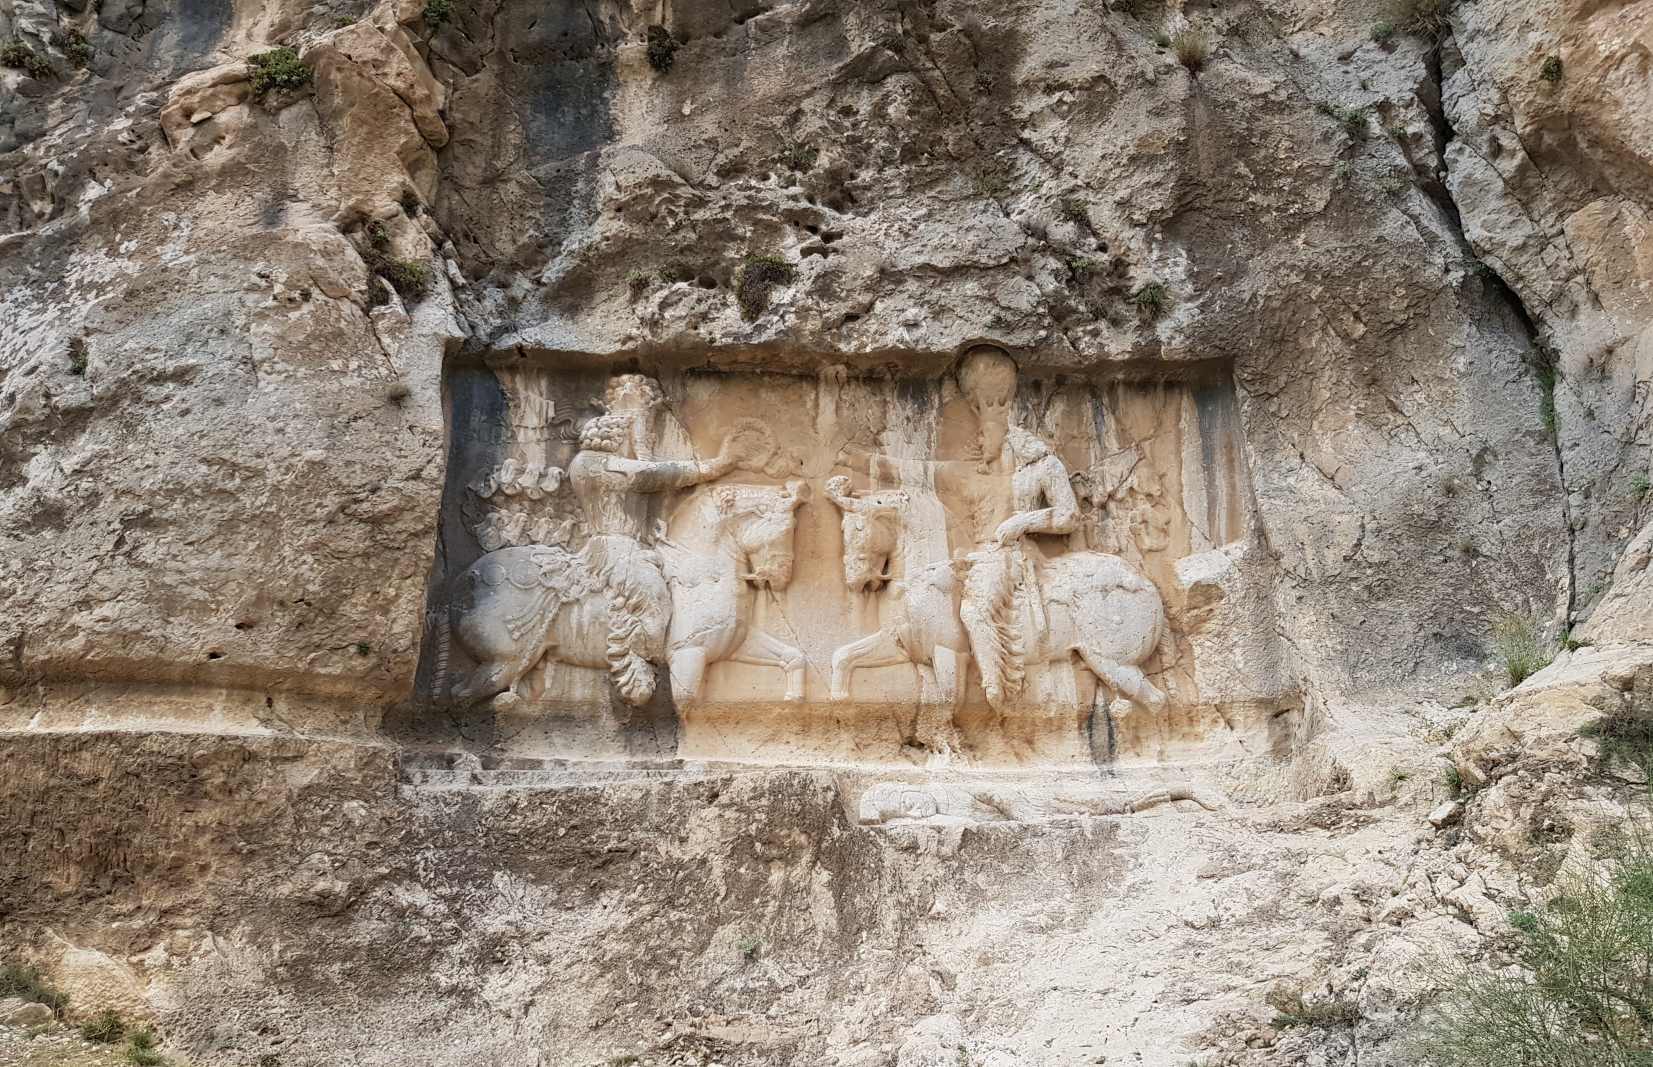 Ένα αρχαίο ανάγλυφο σκάλισμα που απεικονίζει τη νίκη του βασιλιά των Σασανίων Shapur I επί του Ρωμαίου αυτοκράτορα Valerian τον περ. 260 Κ.Χ. Αυτό το ανάγλυφο του Shapur βρίσκεται στο Bishapur. Οκτώ αρχαιολογικοί χώροι που απαρτίζουν το σύνολο κατανέμονται σε τρεις γεωγραφικές περιοχές: Φιρουζαμπάντ, Σαρβεστάν και Νταράμπ, στην επαρχία Φαρς.